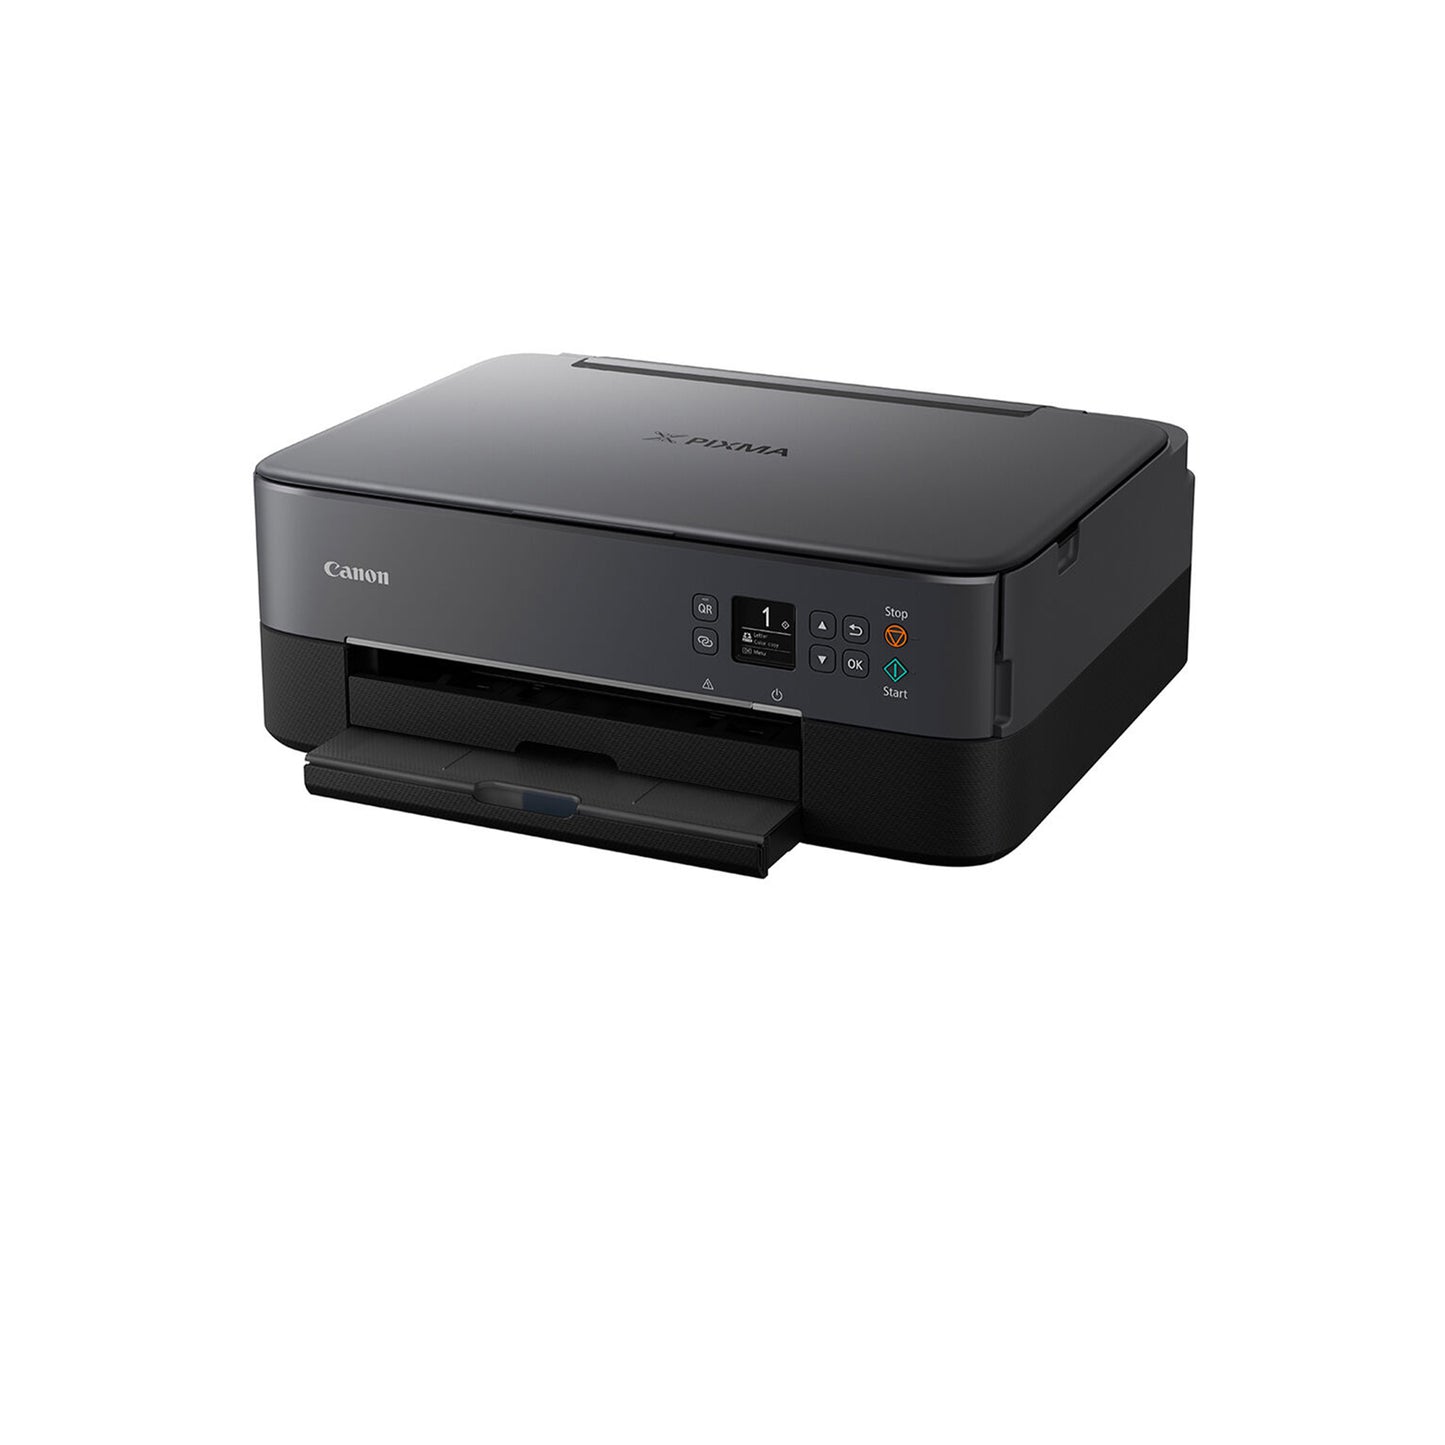 PIXMA TS6420a Wireless All-in-One Printer Black